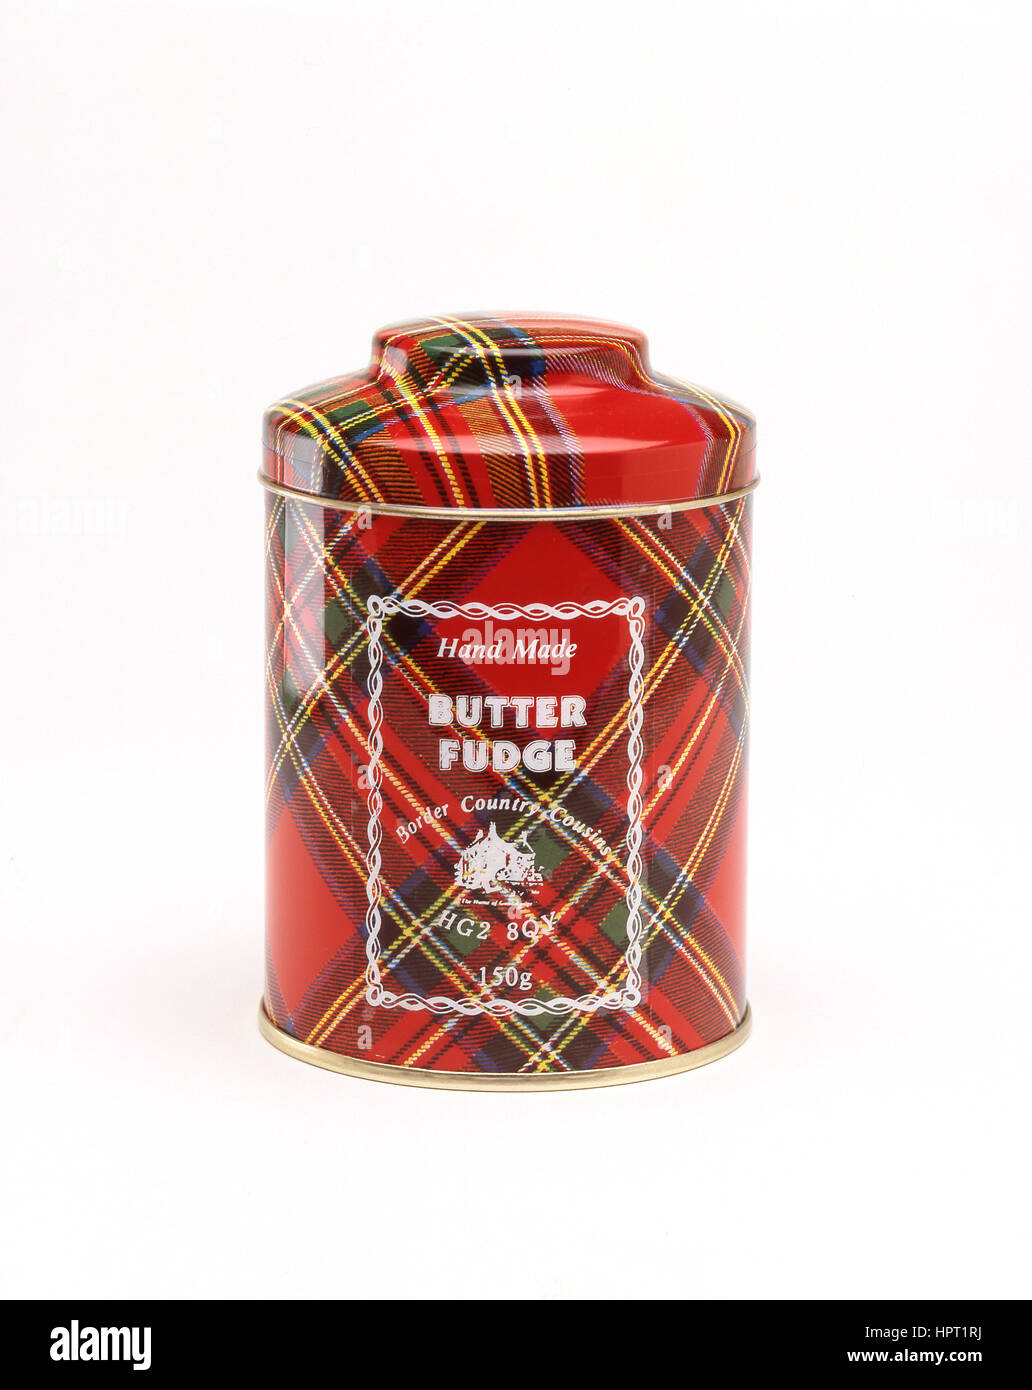 Handgemachte schottische Butter fudge, Inverness, Schottisches Hochland, Schottland, Vereinigtes Königreich Stockfoto